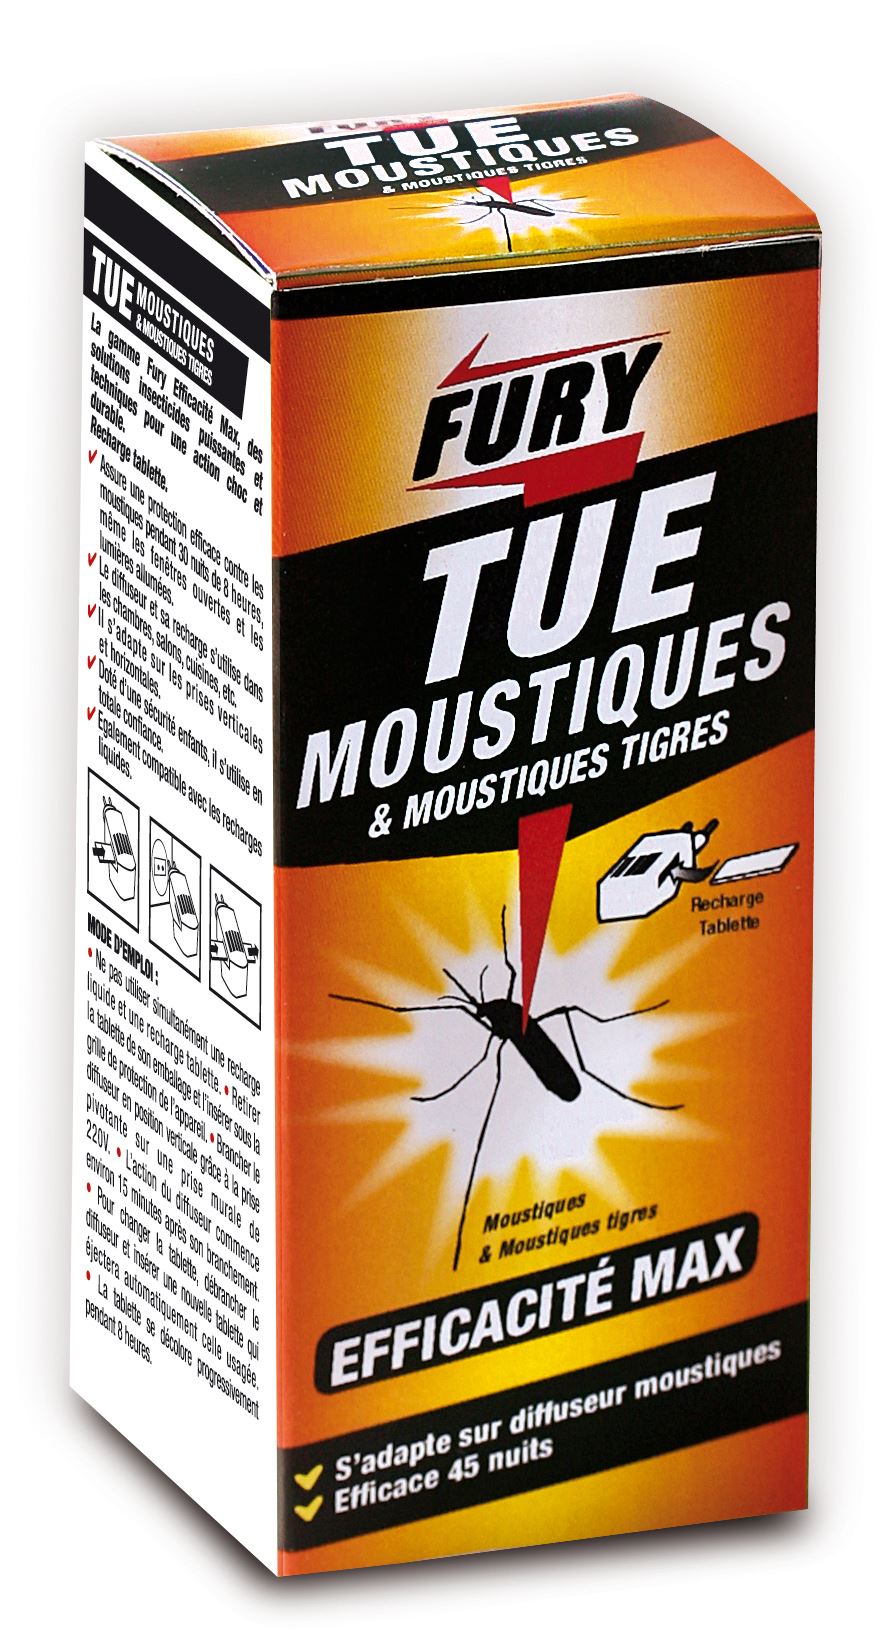 Prise anti-moustiques : Solutions anti-moustiques et anti-insectes